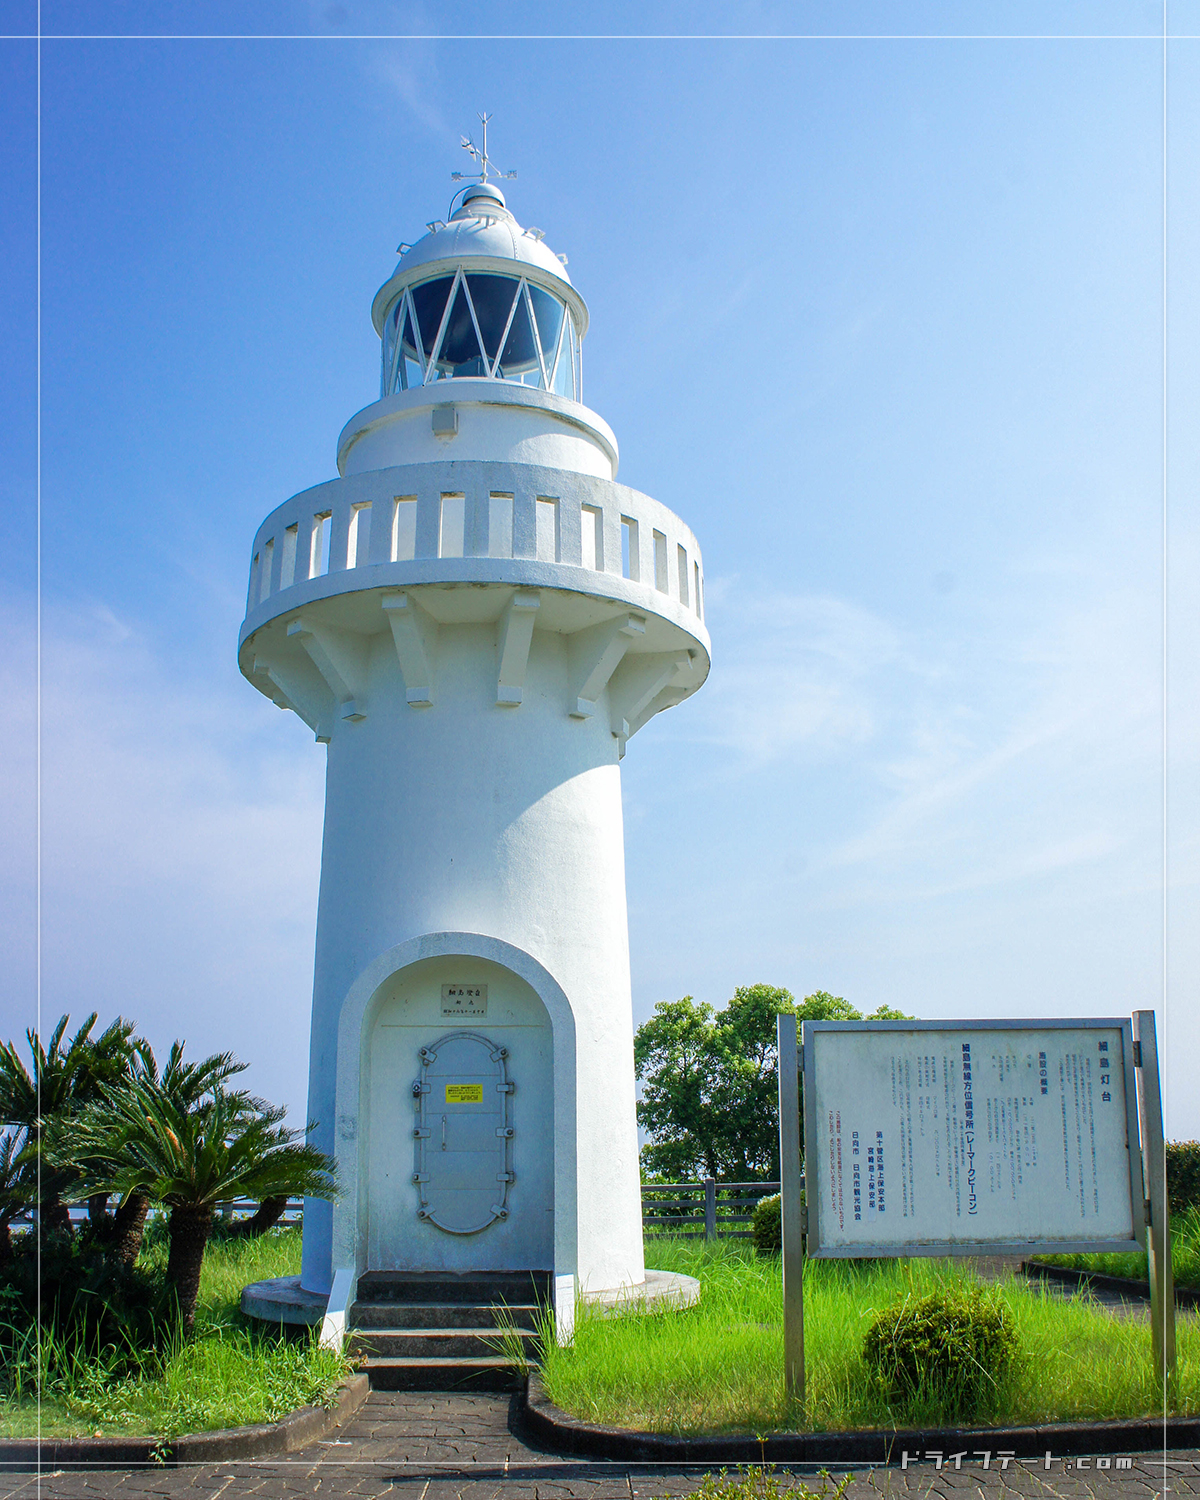 日向岬に立つ細島灯台は塔高わずか11.4mの小さな白い灯台